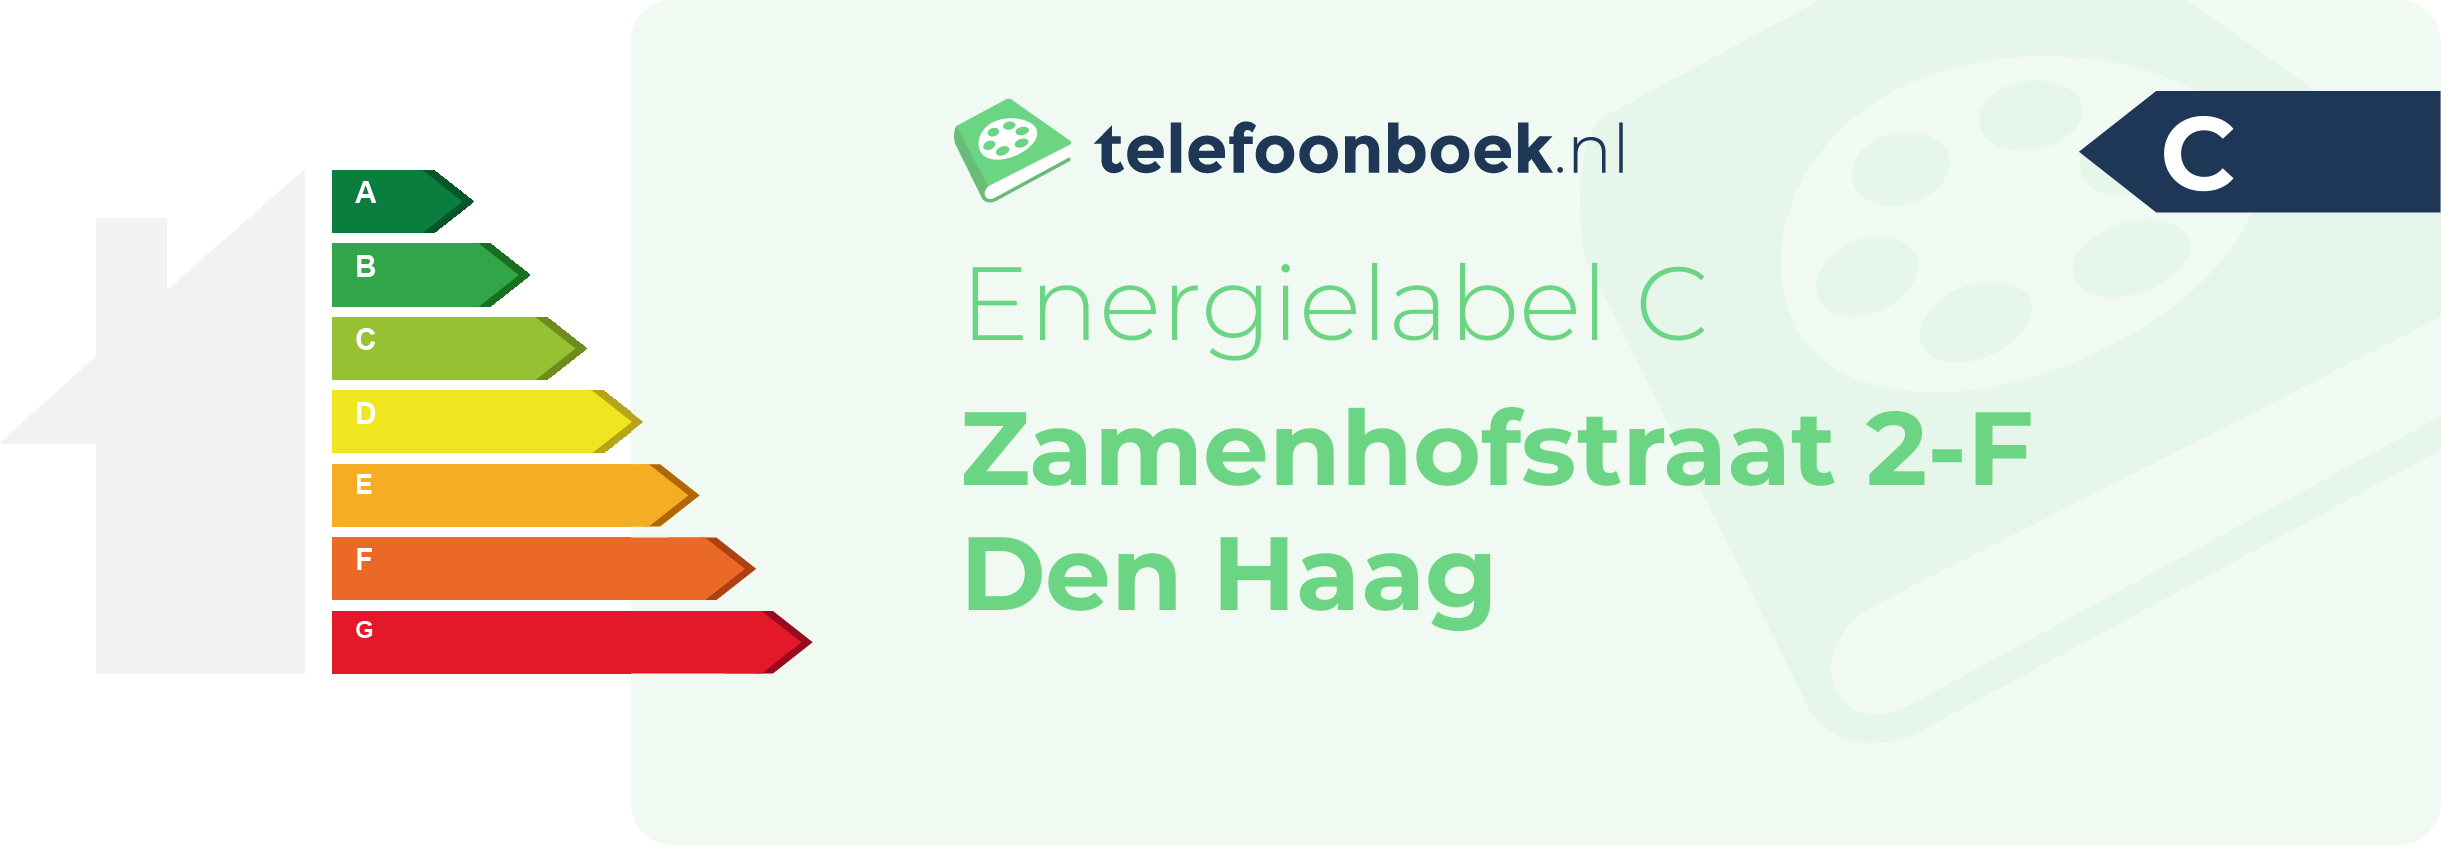 Energielabel Zamenhofstraat 2-F Den Haag